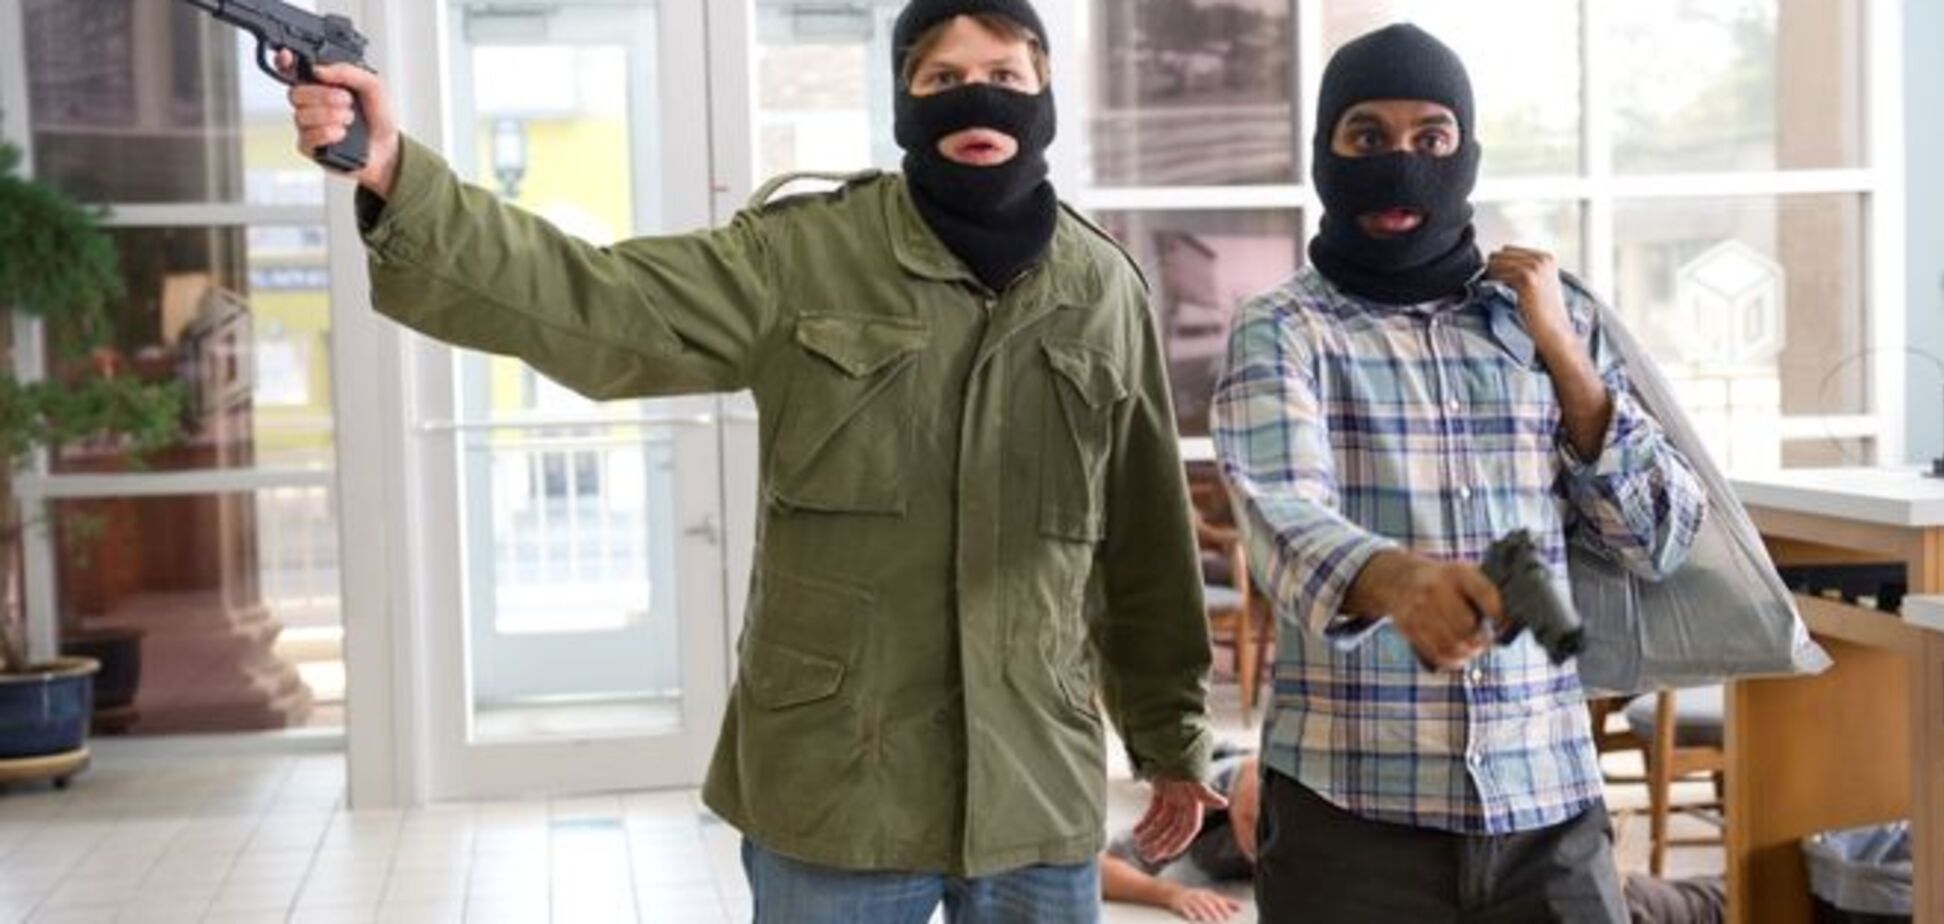 В продуктовом магазине Киева неизвестные с оружием 'сняли кассу'